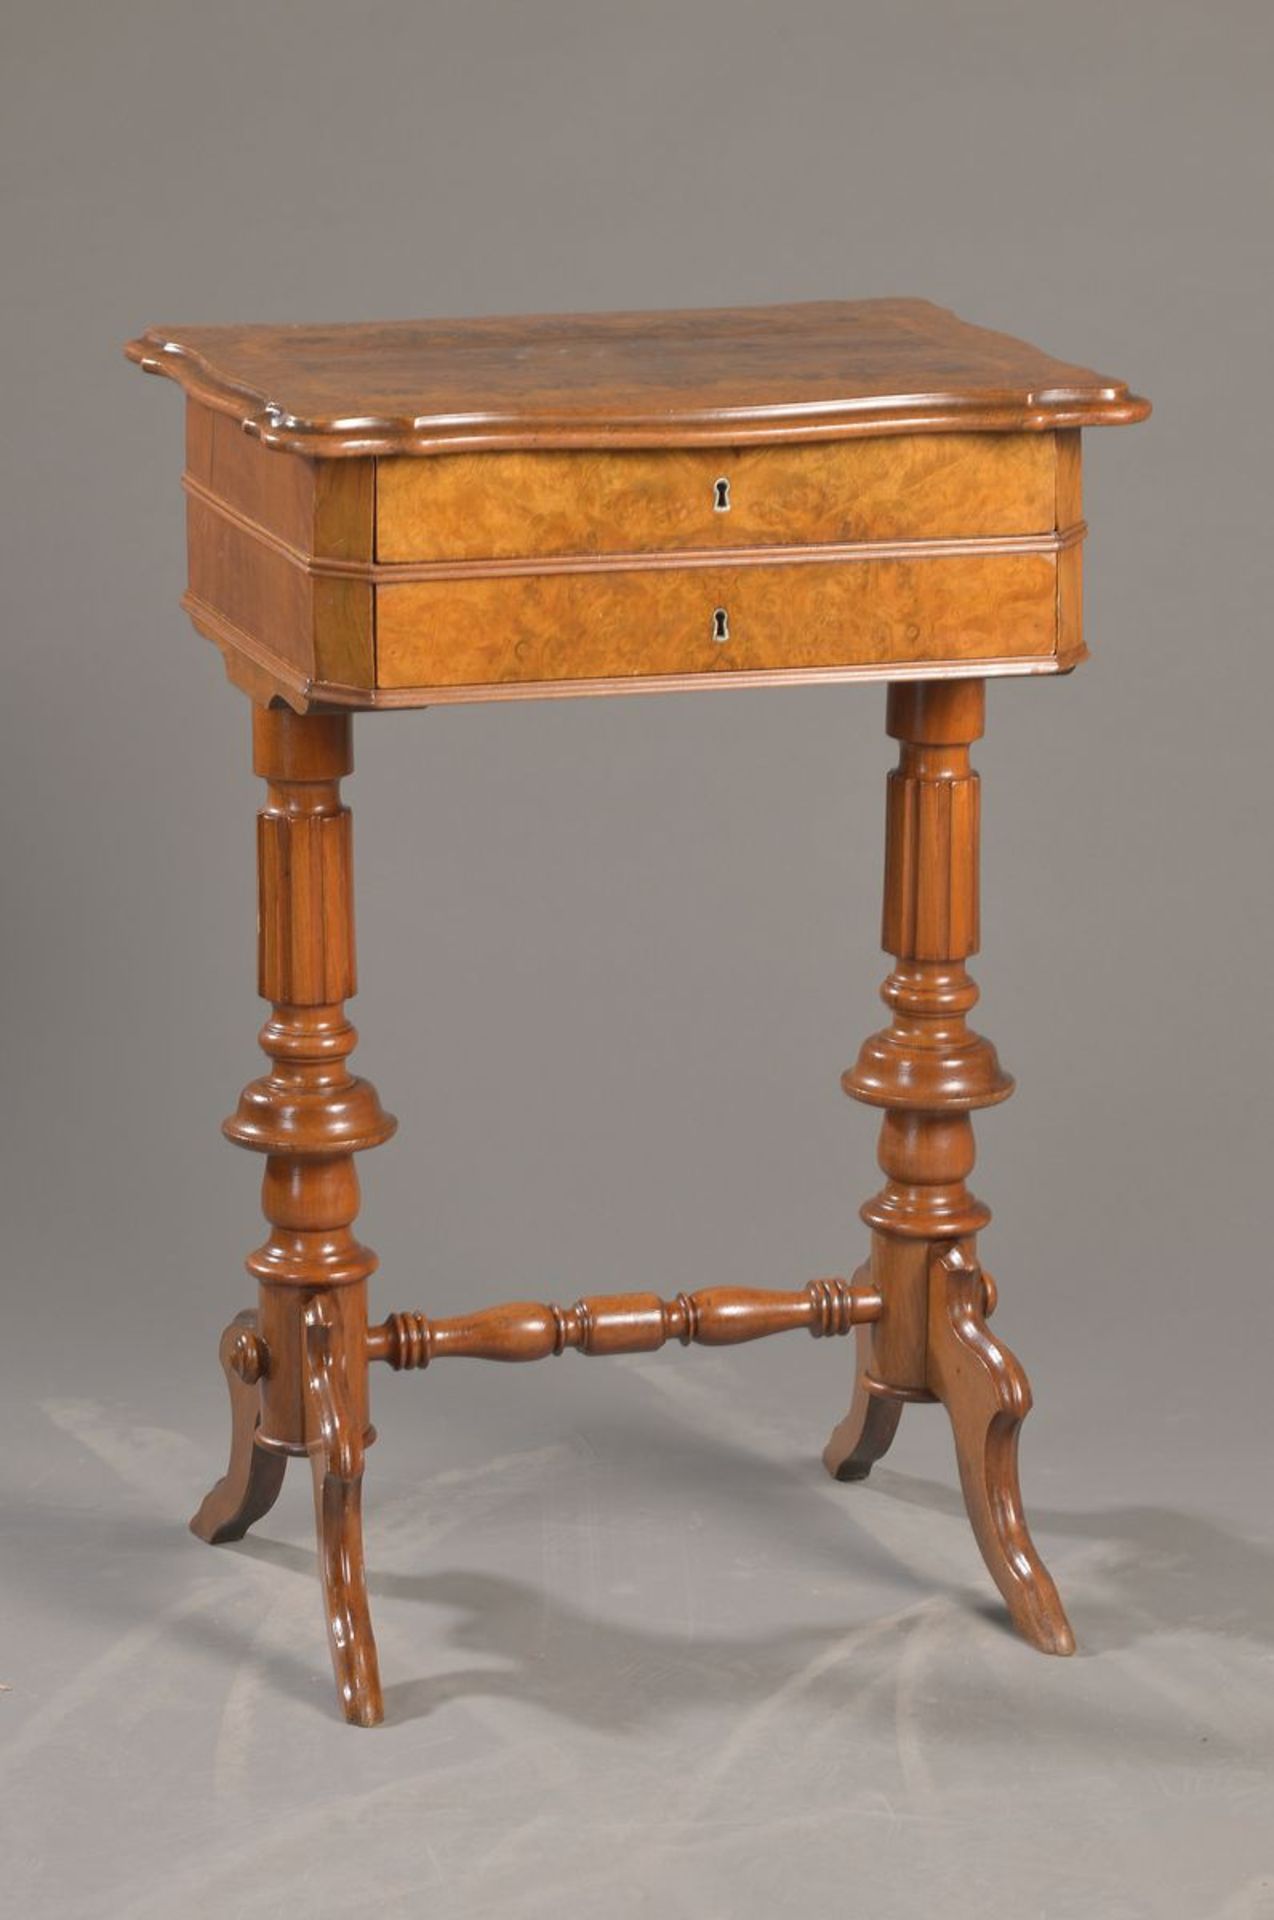 sewing table, German, around 1880, root nut veneer, partly walnut massive, selected root veneer on